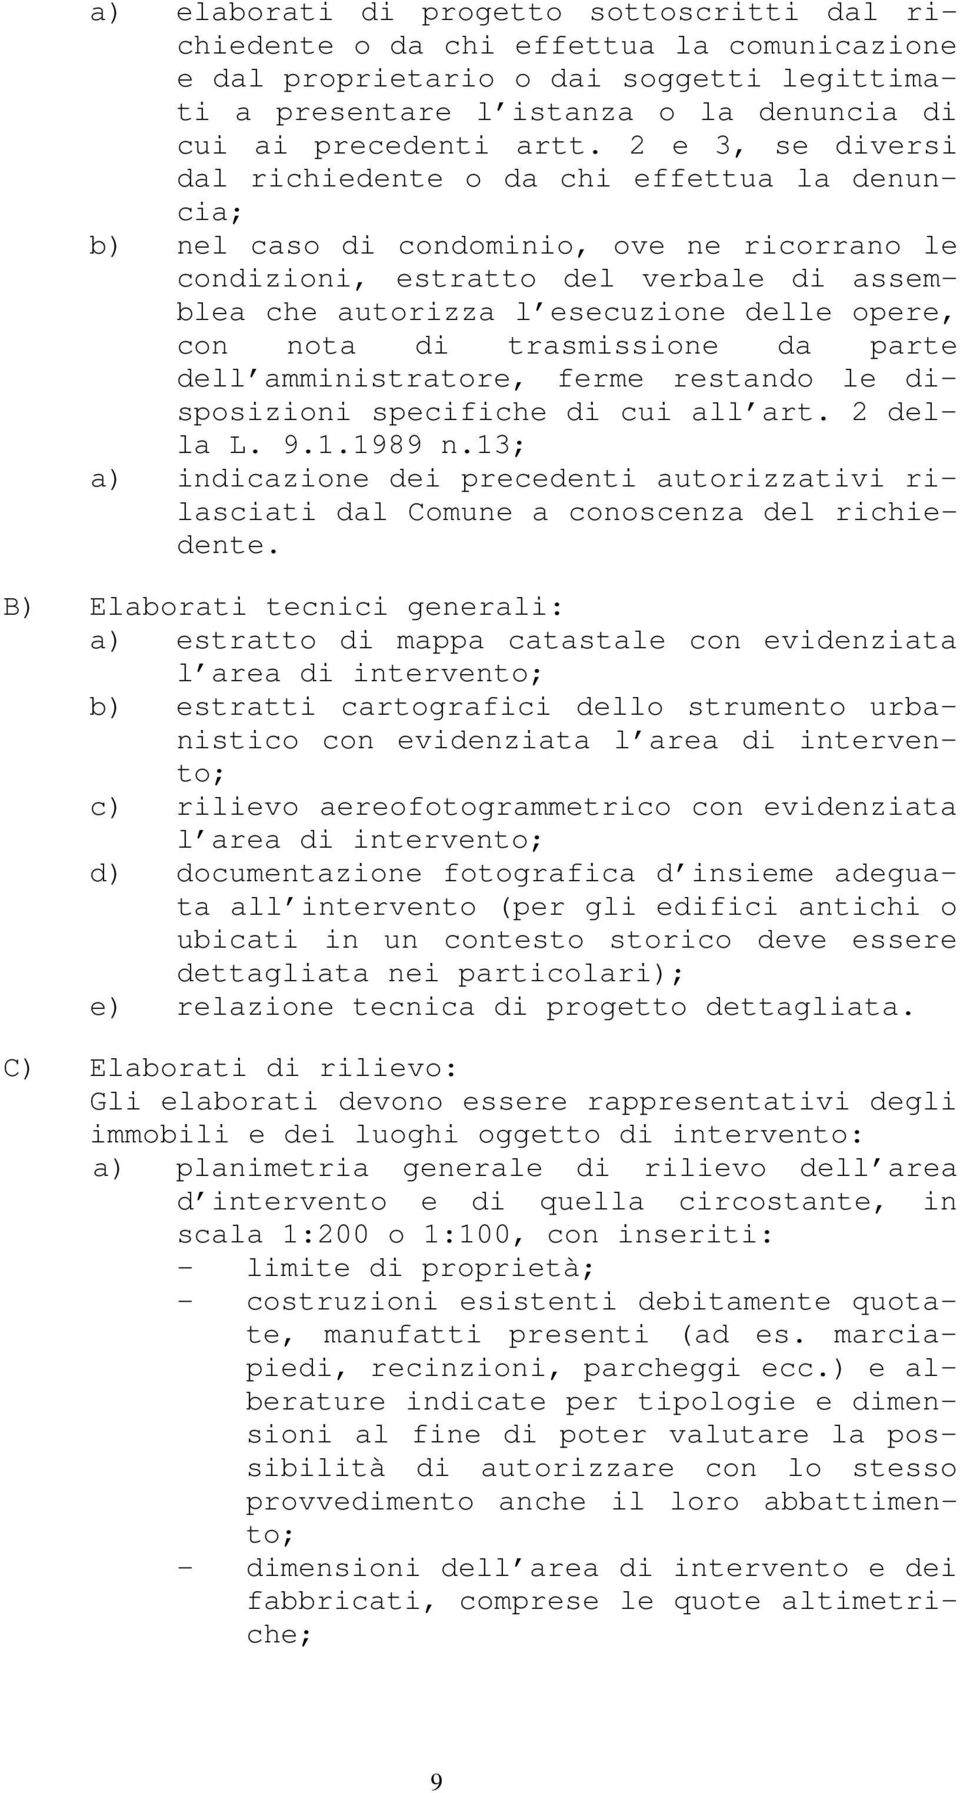 con nota di trasmissione da parte dell amministratore, ferme restando le disposizioni specifiche di cui all art. 2 della L. 9.1.1989 n.